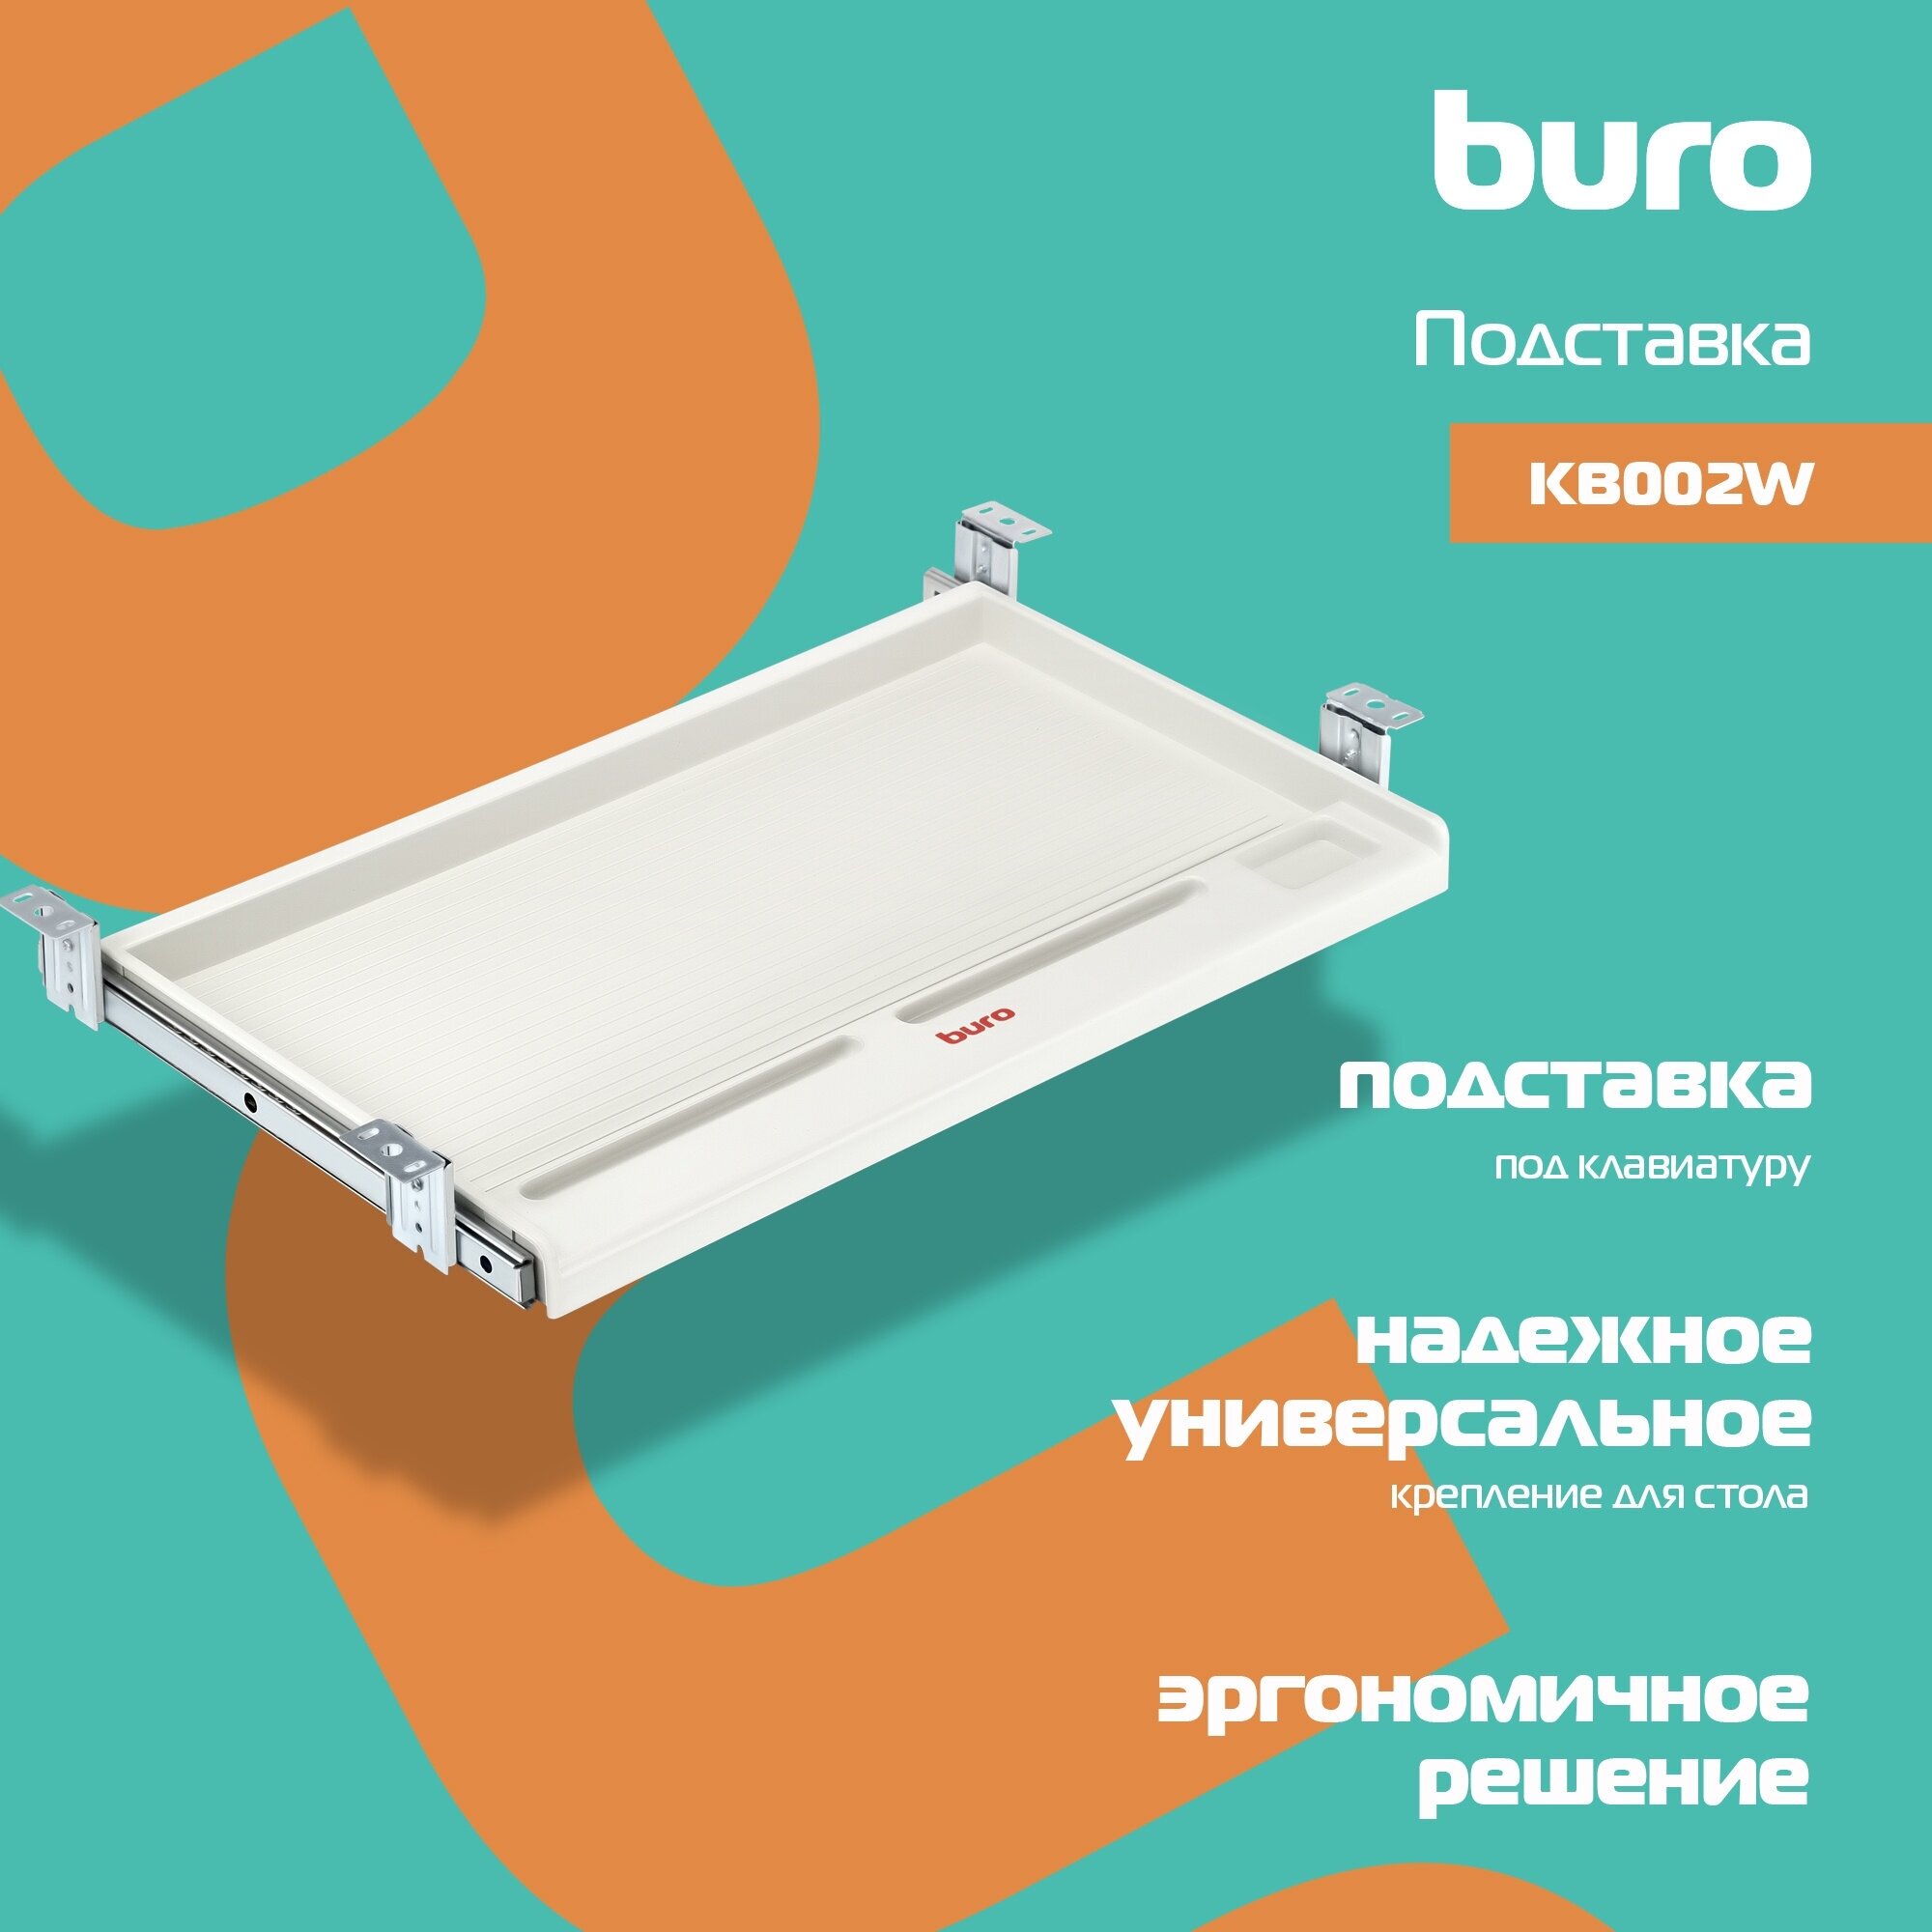 Подставка для клавиатуры Buro - фото №5